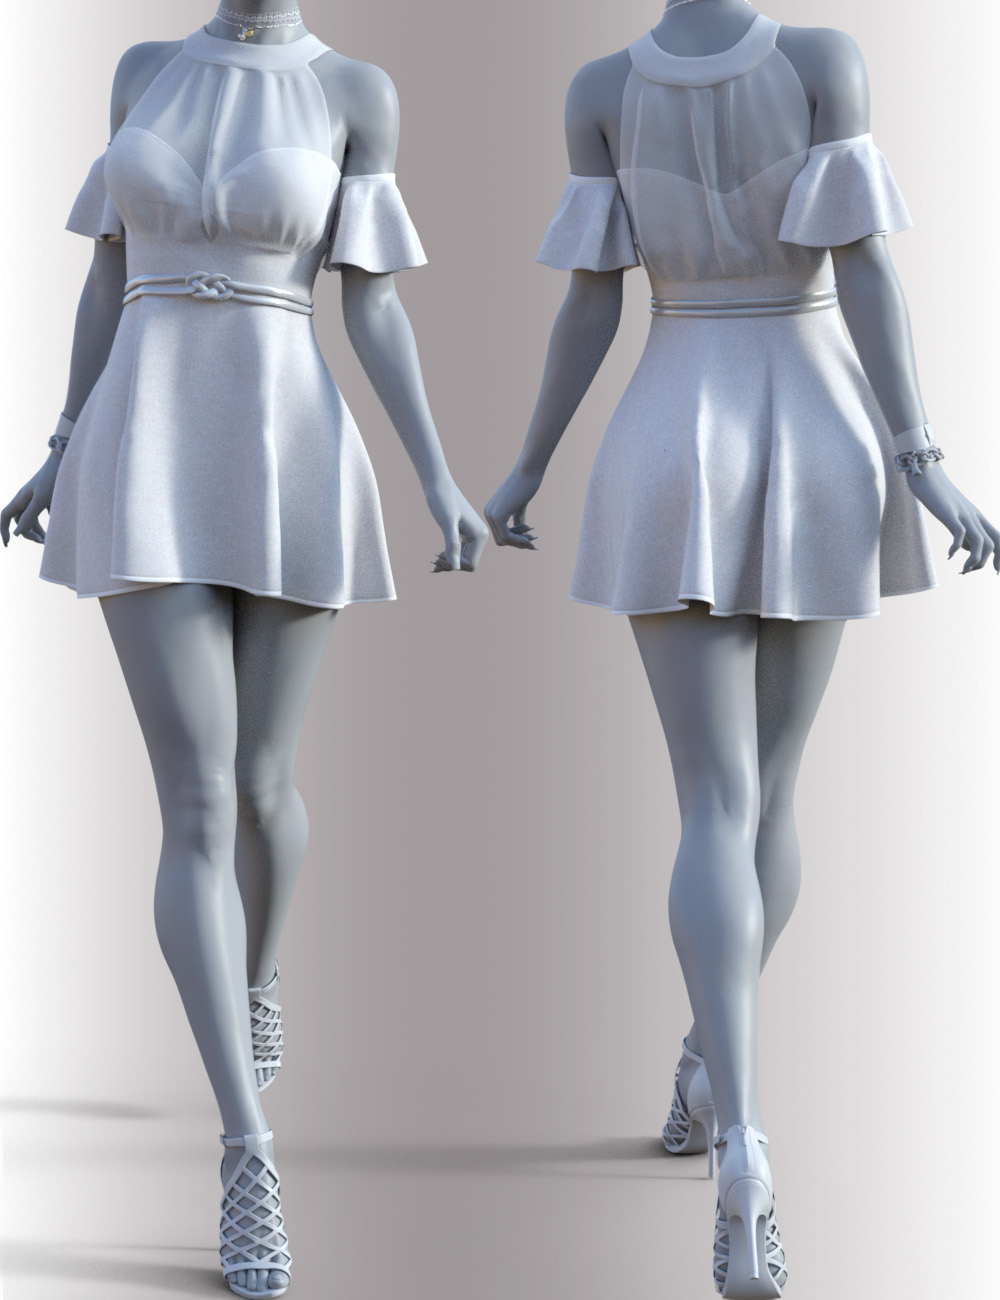 dForce Leyla Outfit for Genesis 8 Females by: OnnelArryn, 3D Models by Daz 3D